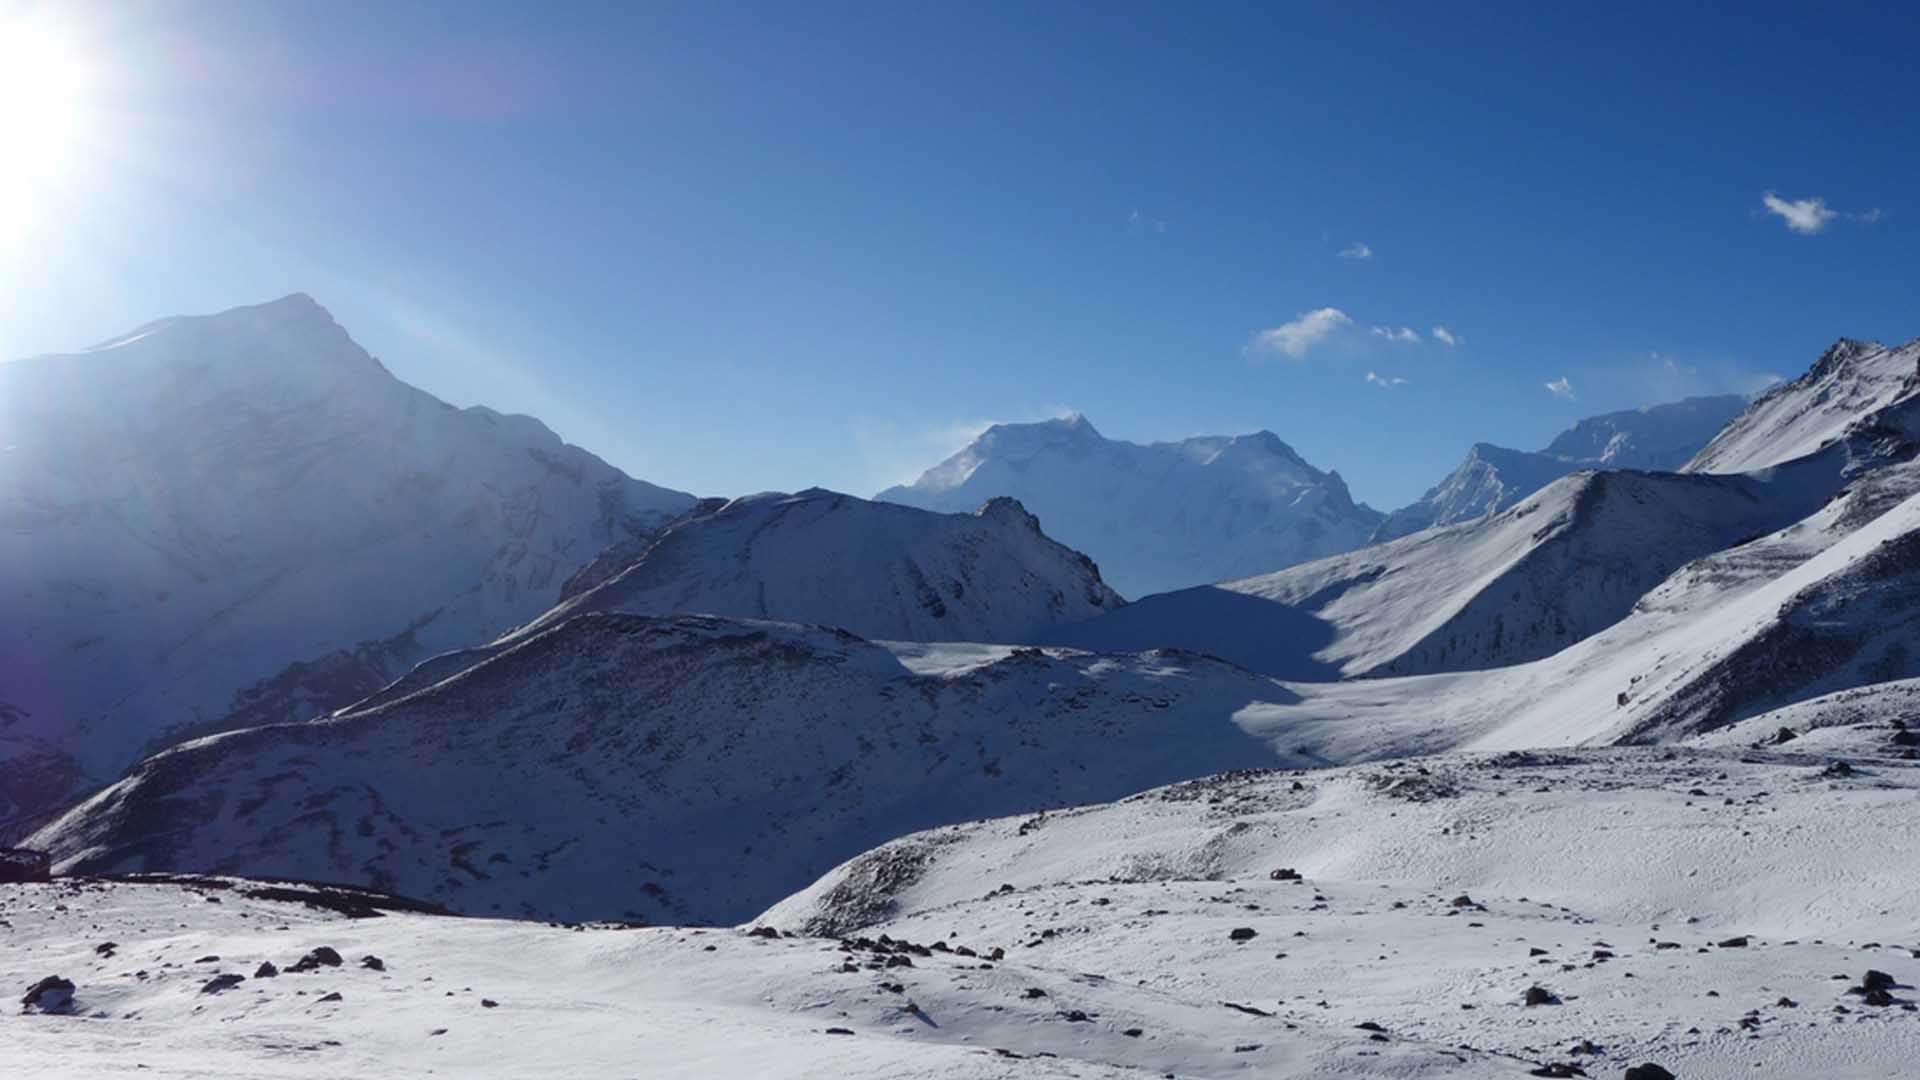 Mt. Shisha Pangma Expedition(8,012m.)